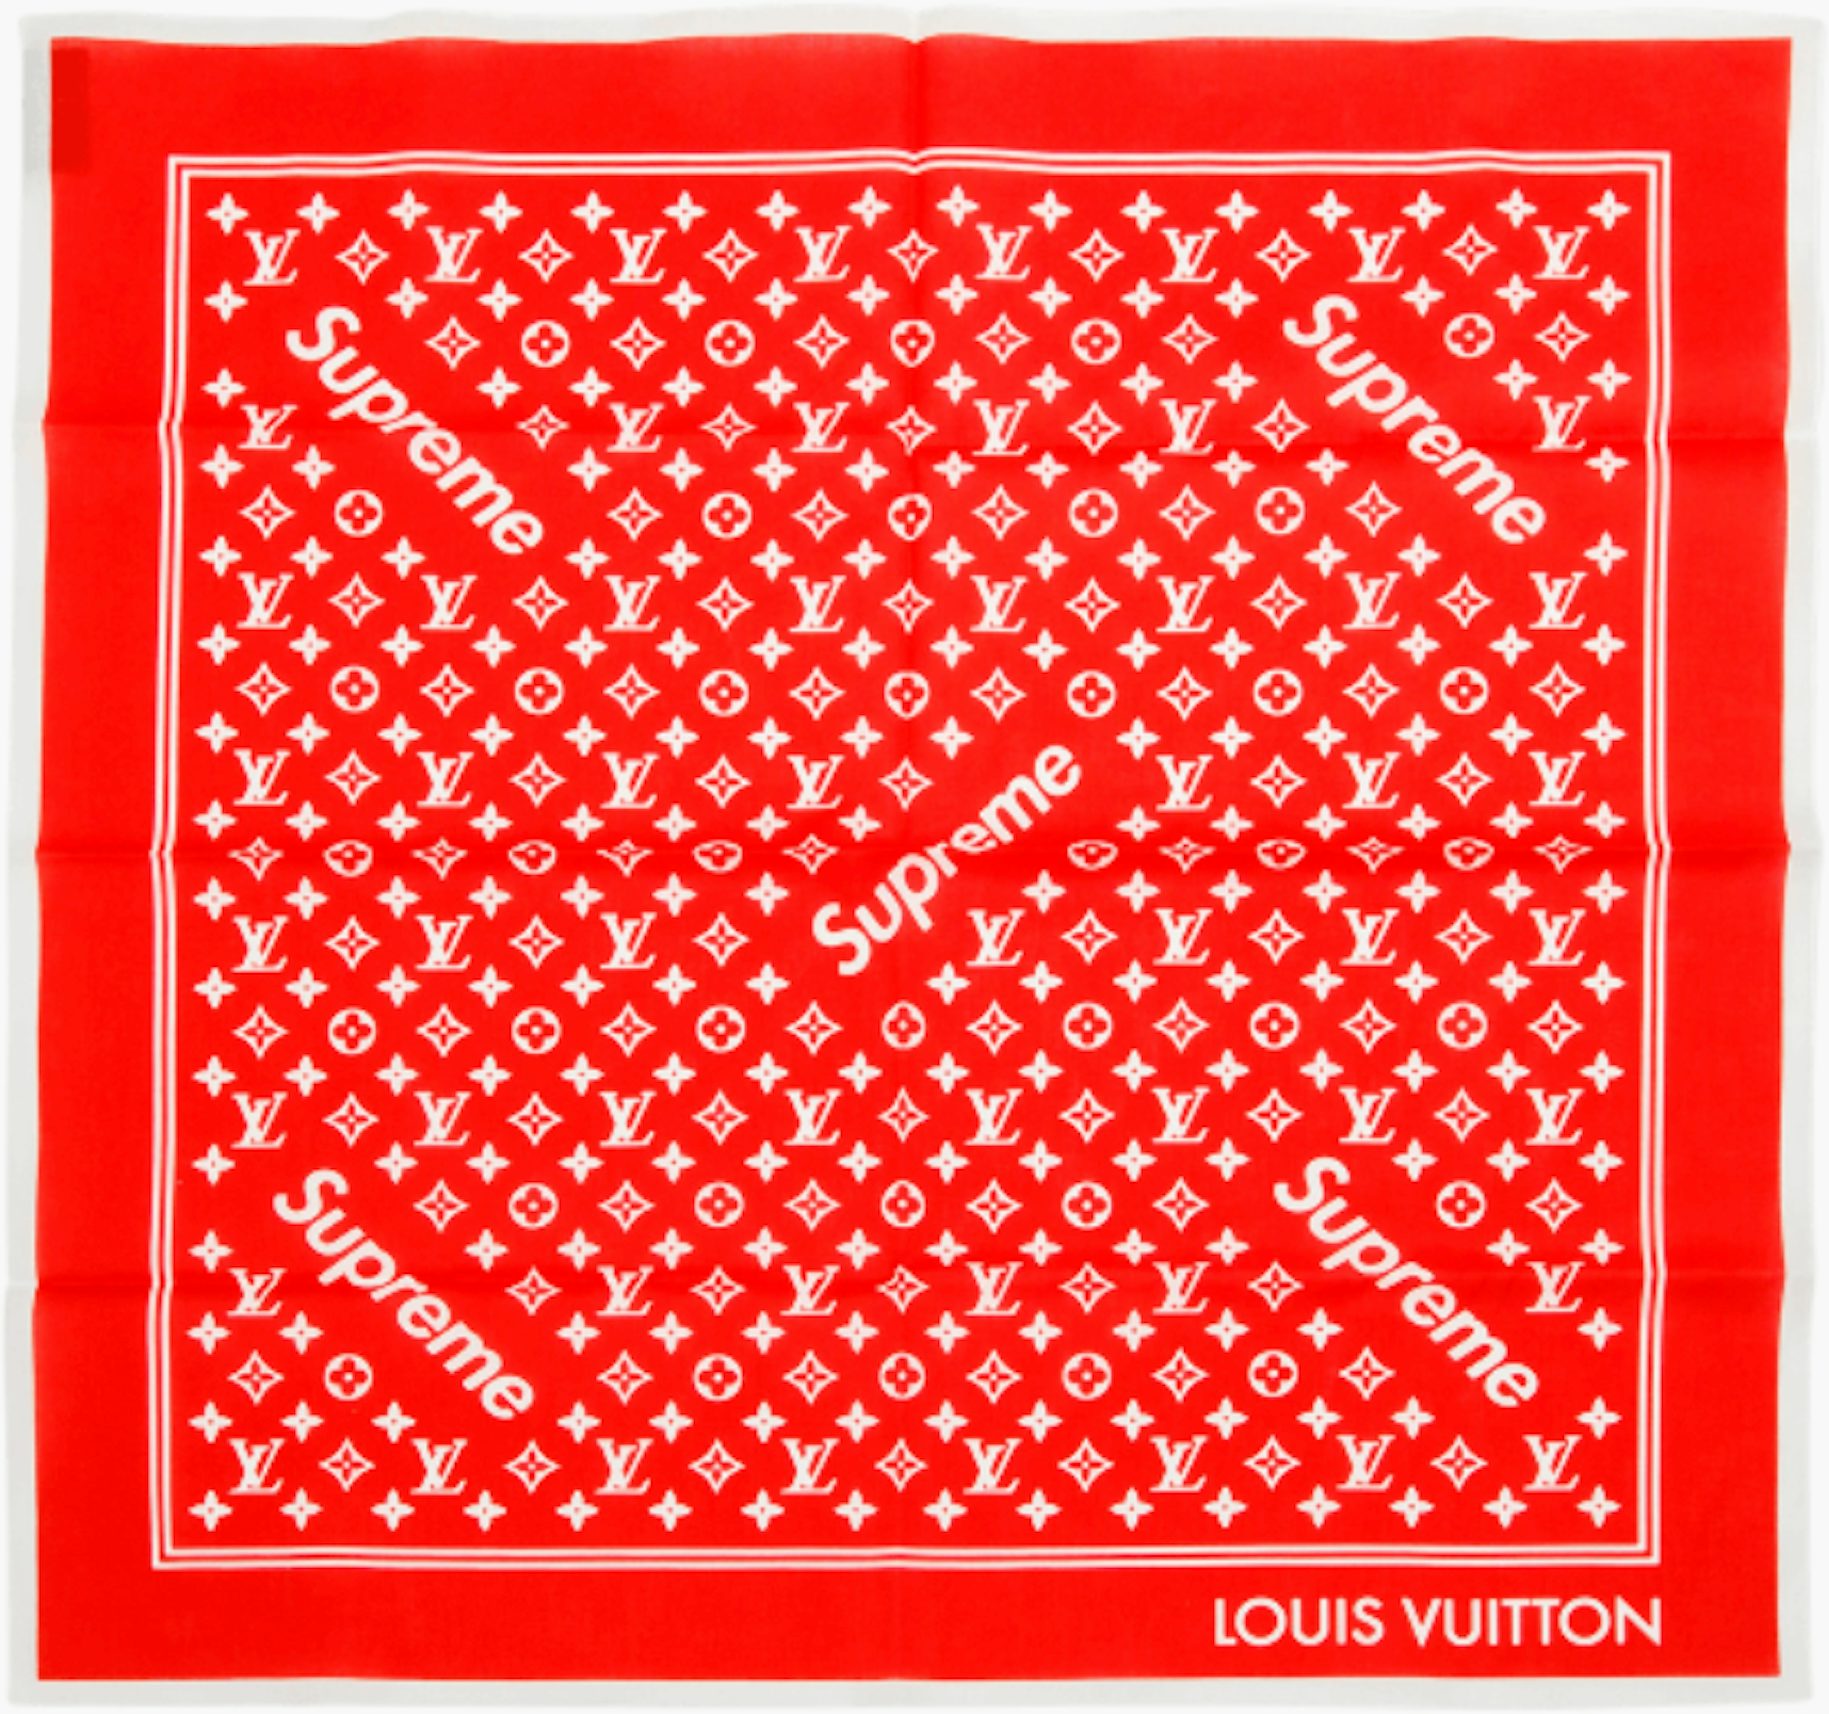 Supreme x Louis Vuitton